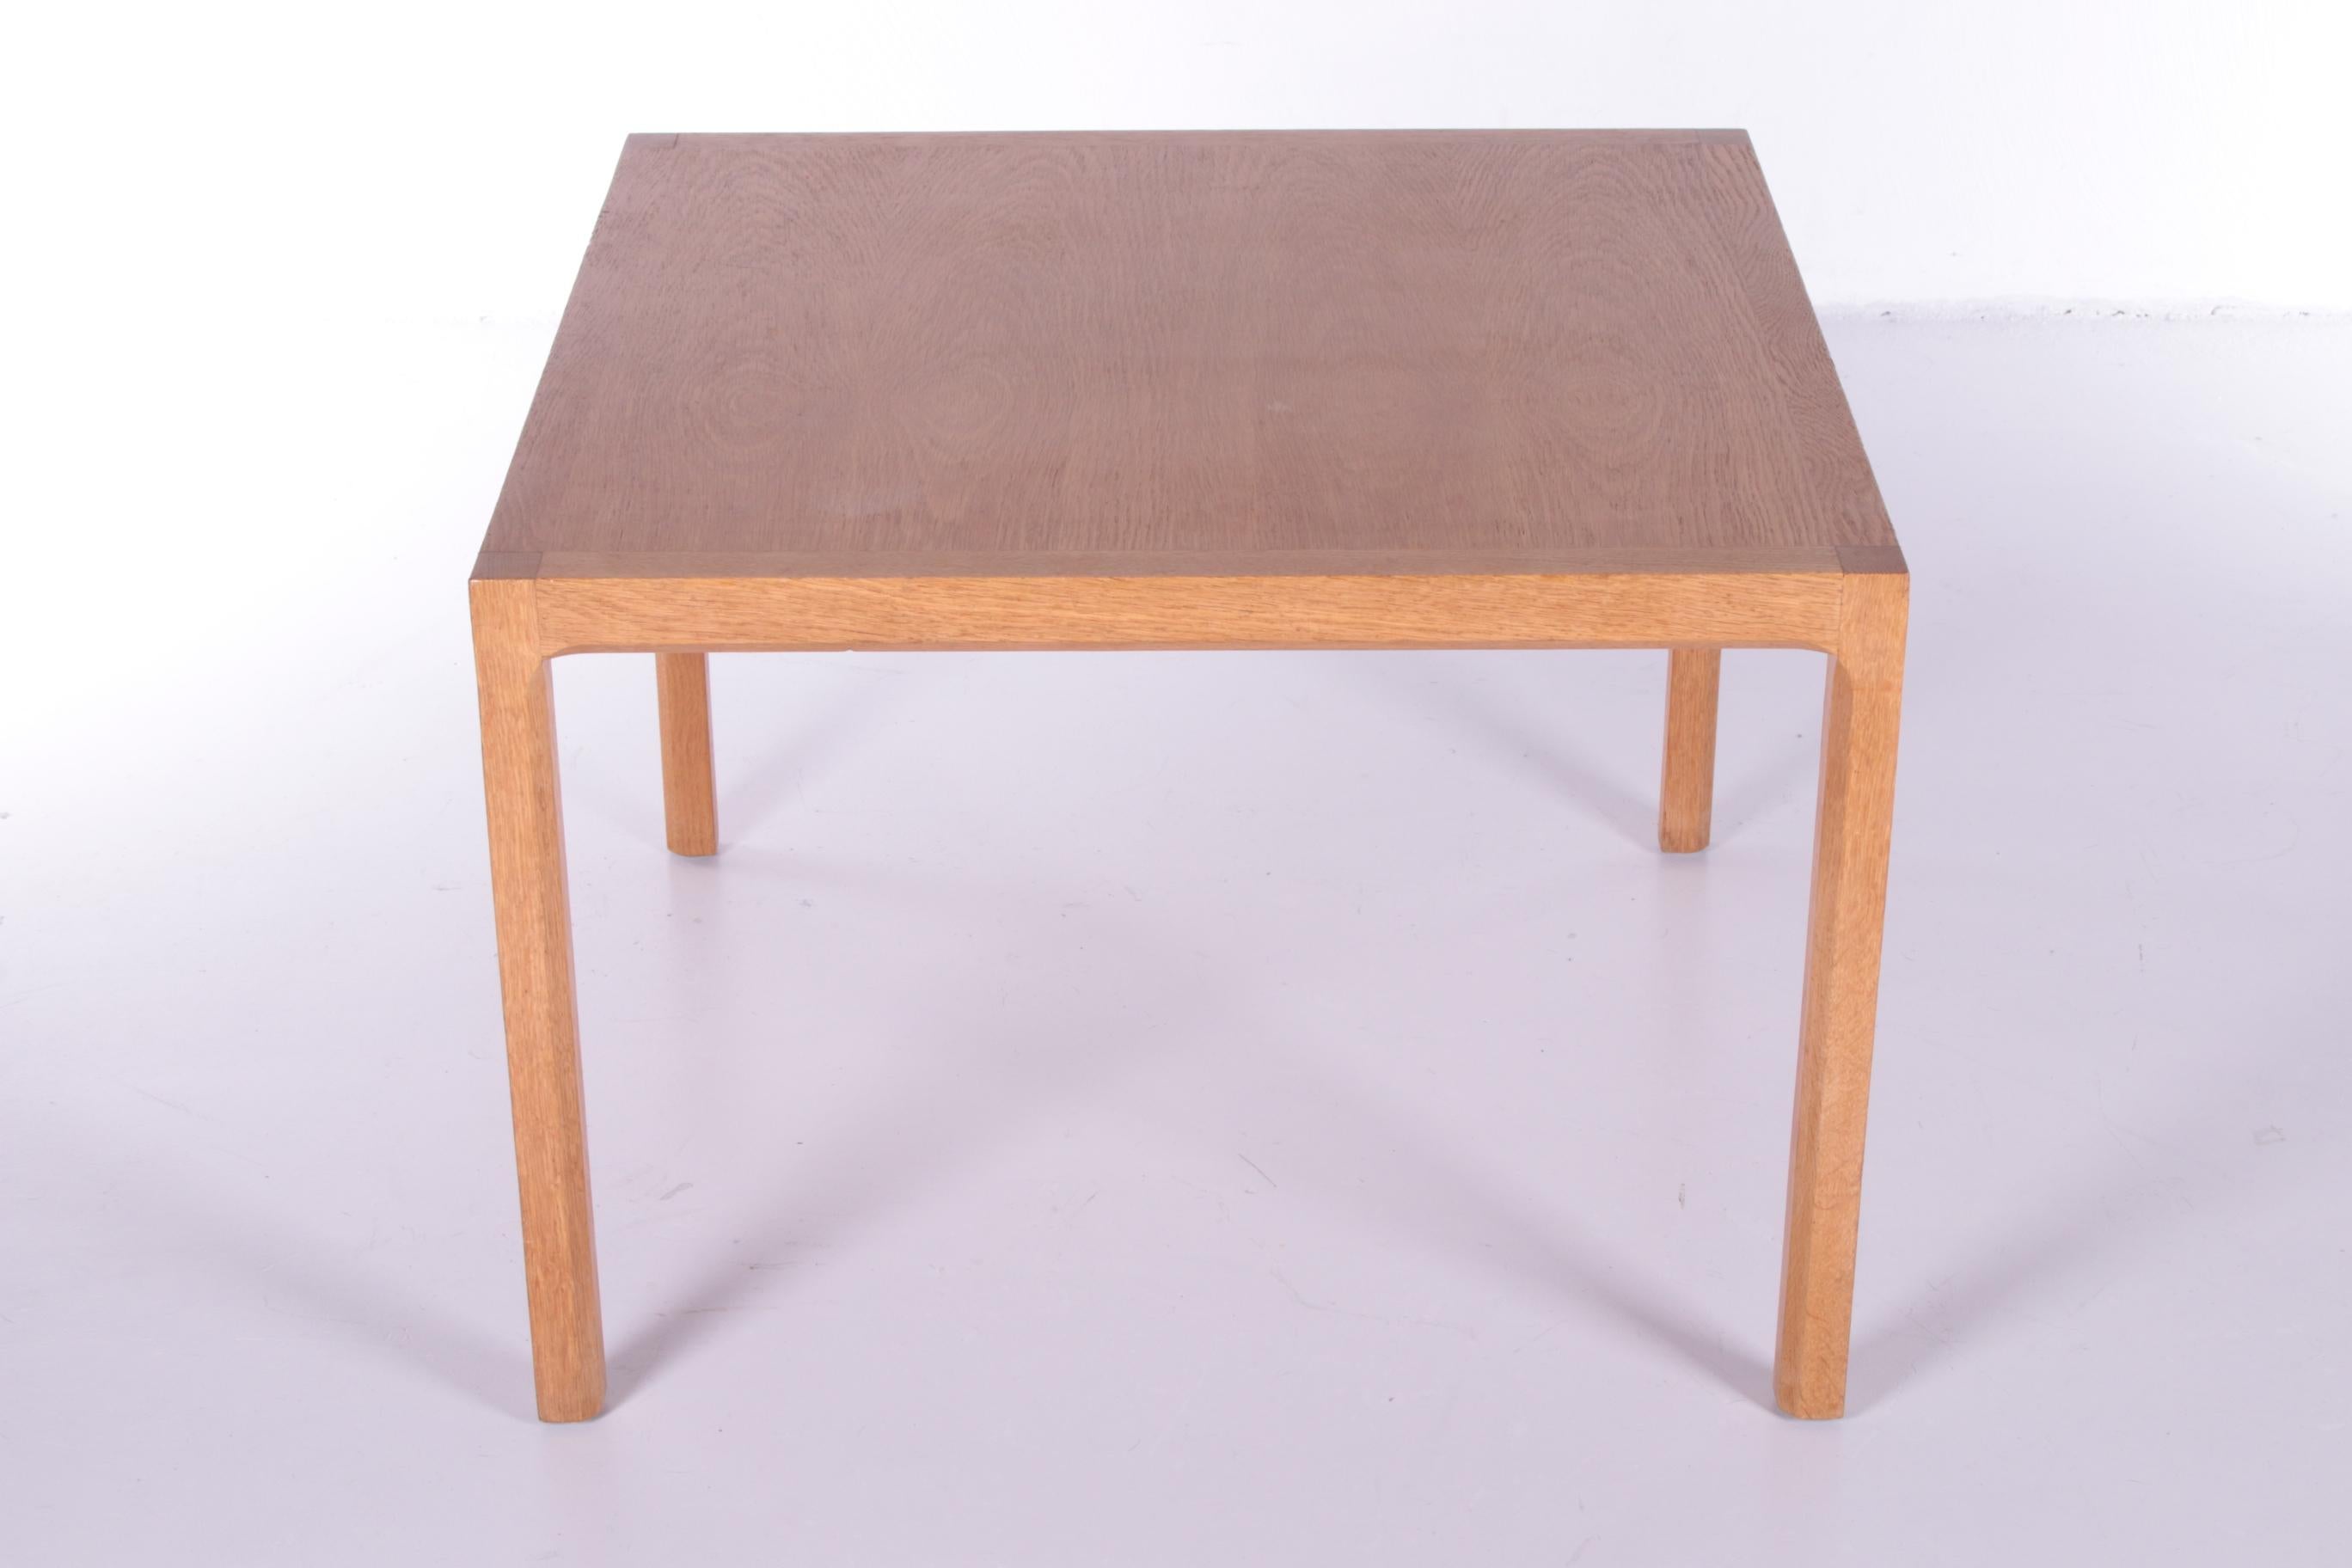 Danish Mid-Century Oak Coffee Table by Kai Kristiansen for Aksel Kjersgaard, 1960s For Sale